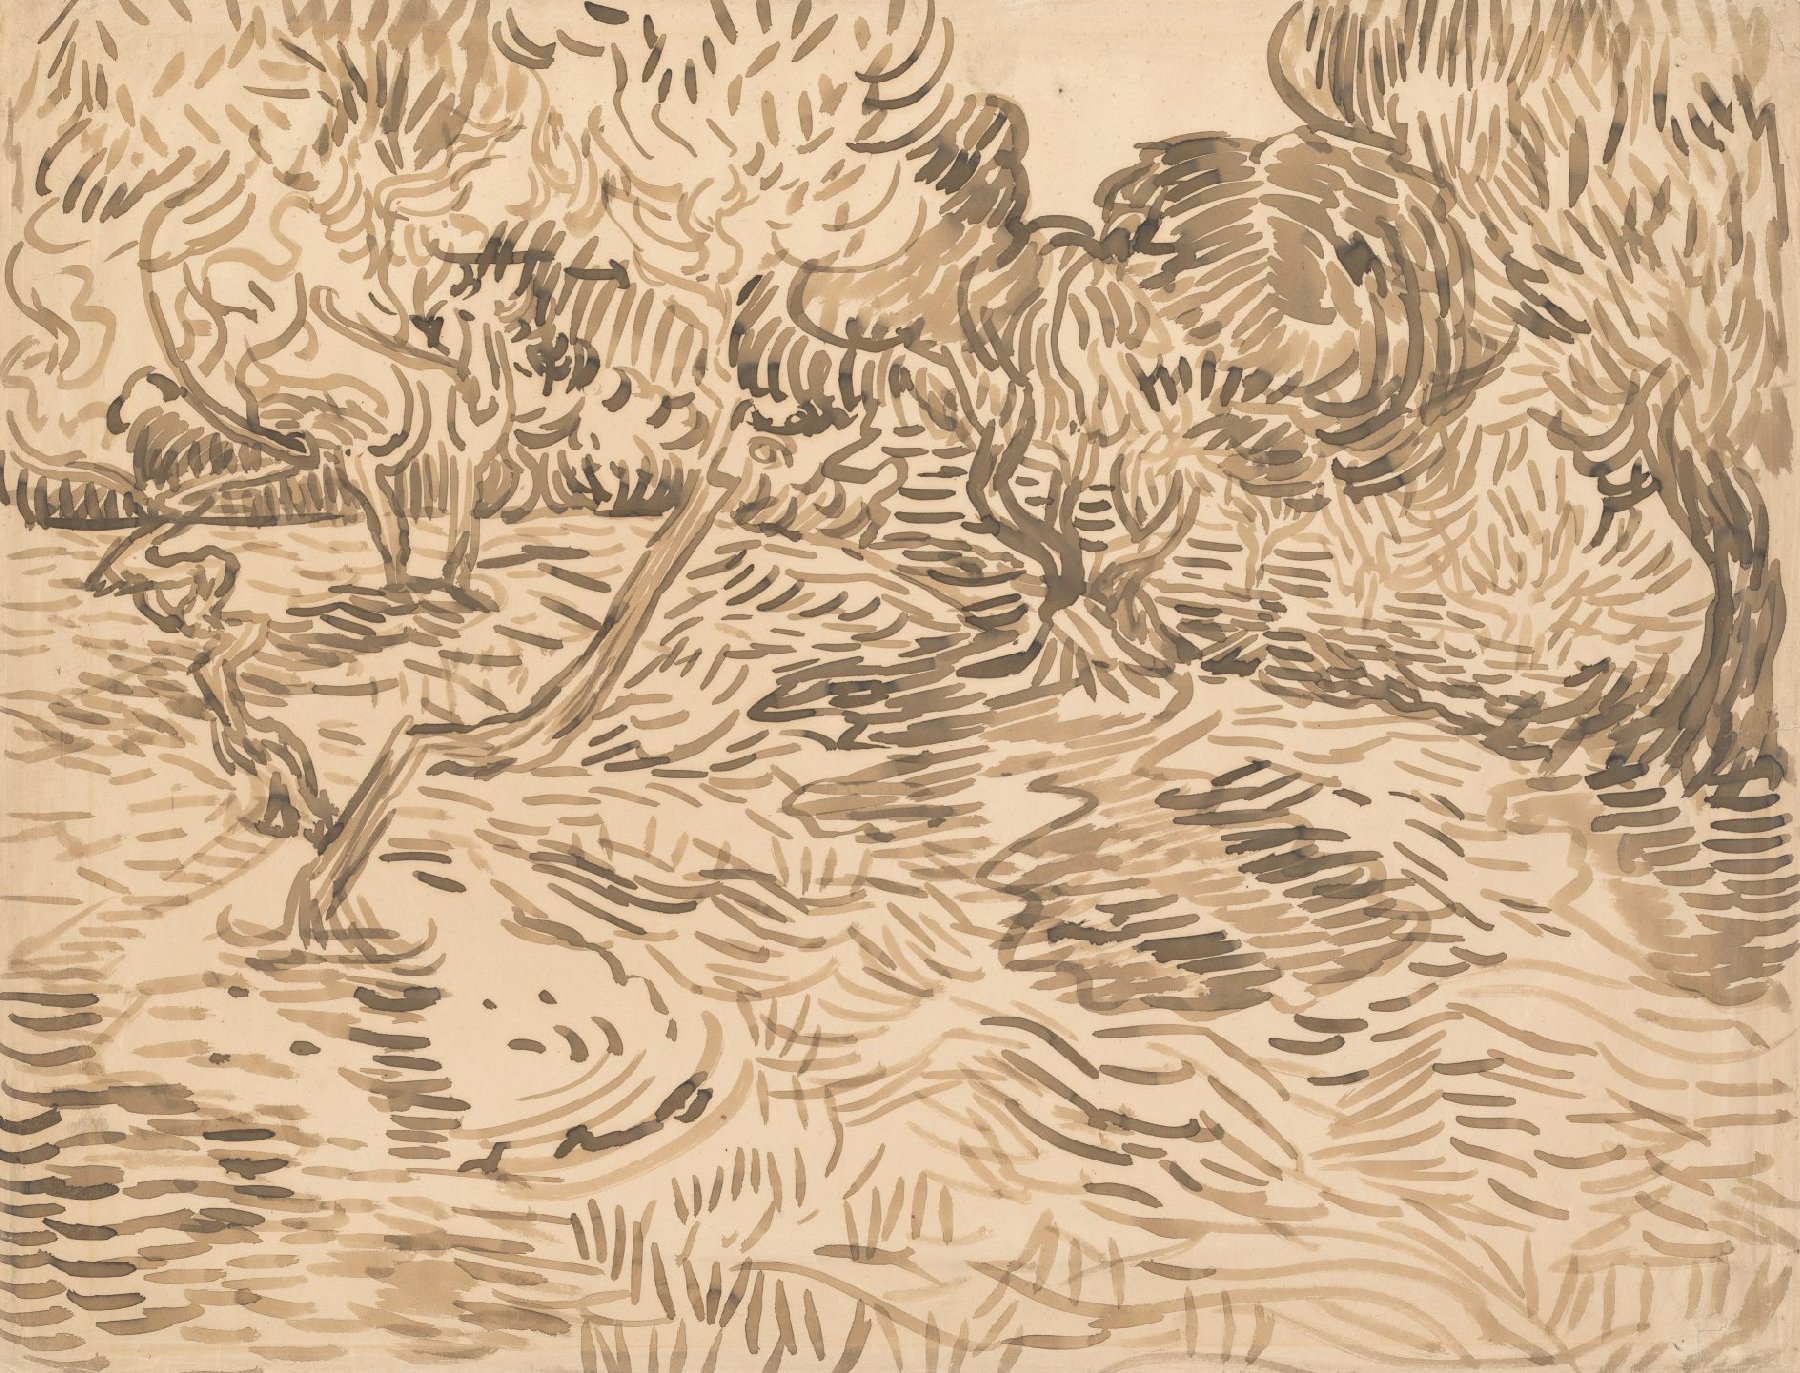 Olijfboomgaard Vincent van Gogh (1853 - 1890), Saint-Rémy-de-Provence, juni 1889